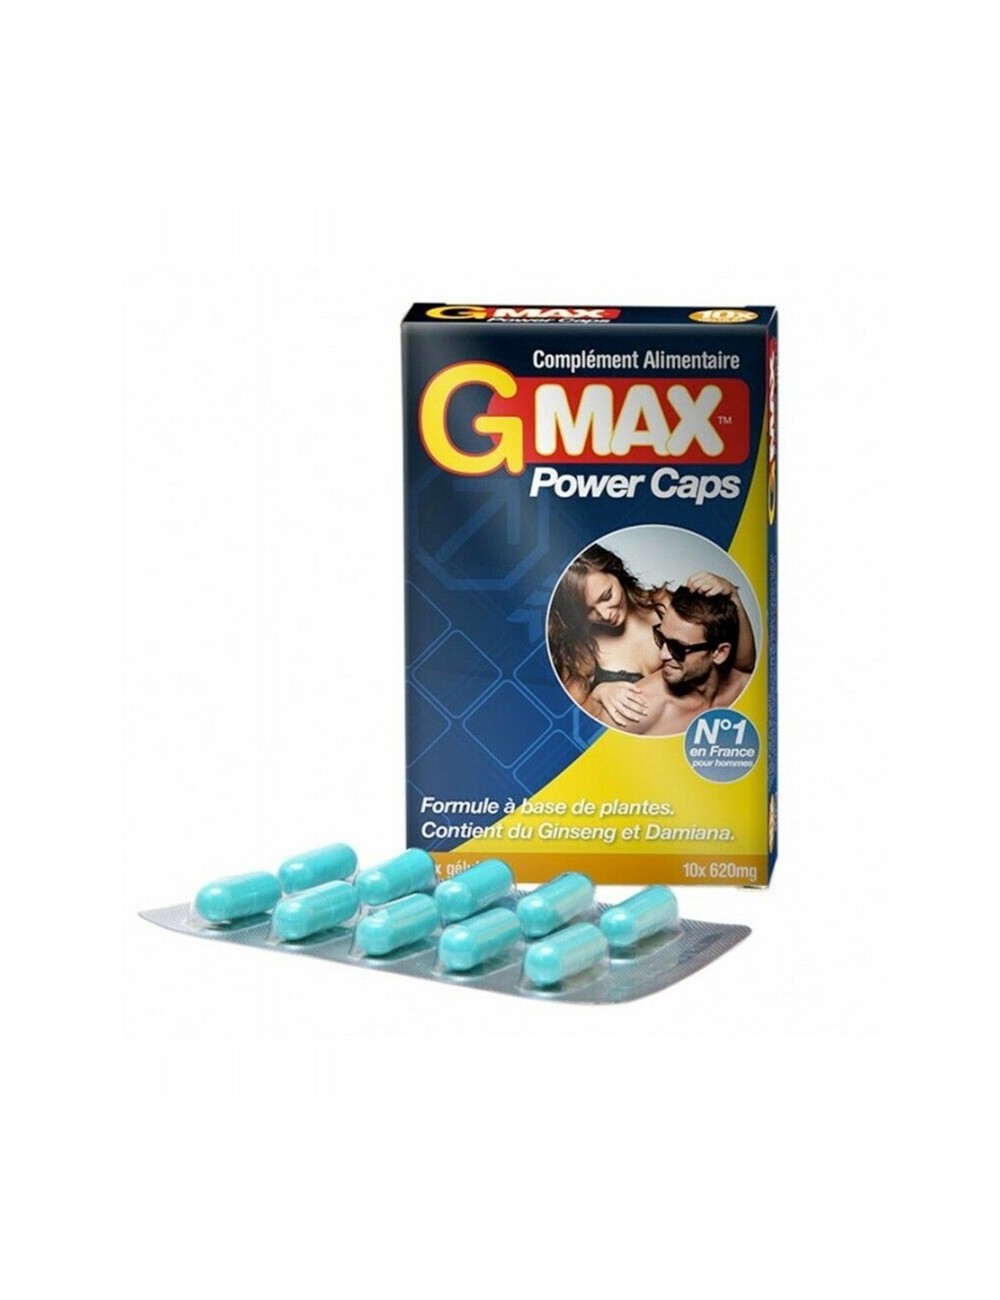 G-Max Power Caps Homme 10 gélules